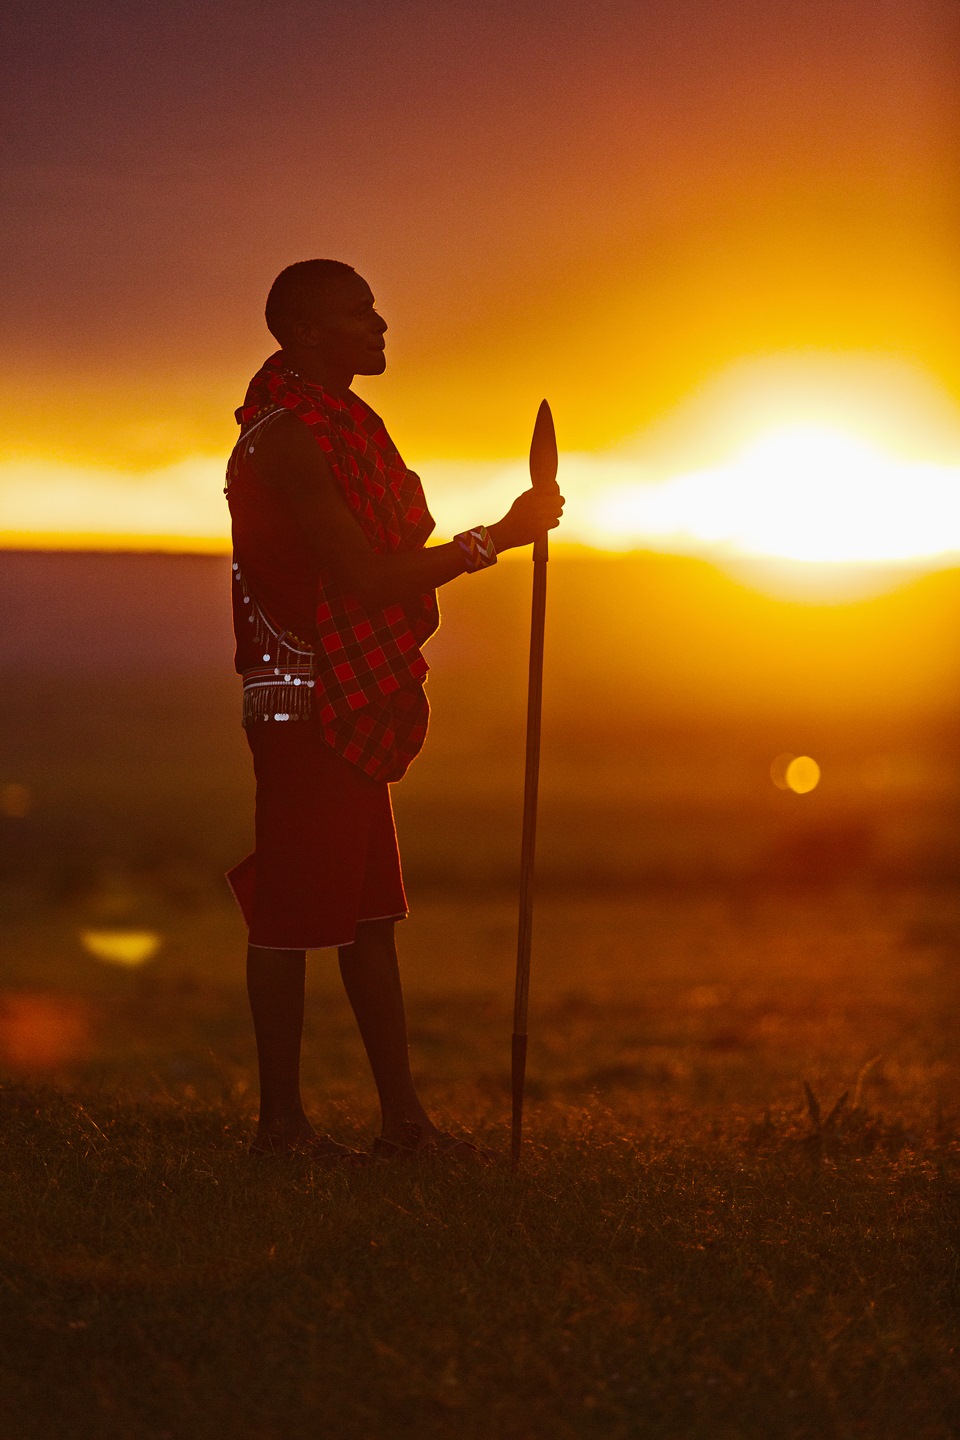 The Country Of The Maasai  The Maasai Mara Kenya part 3